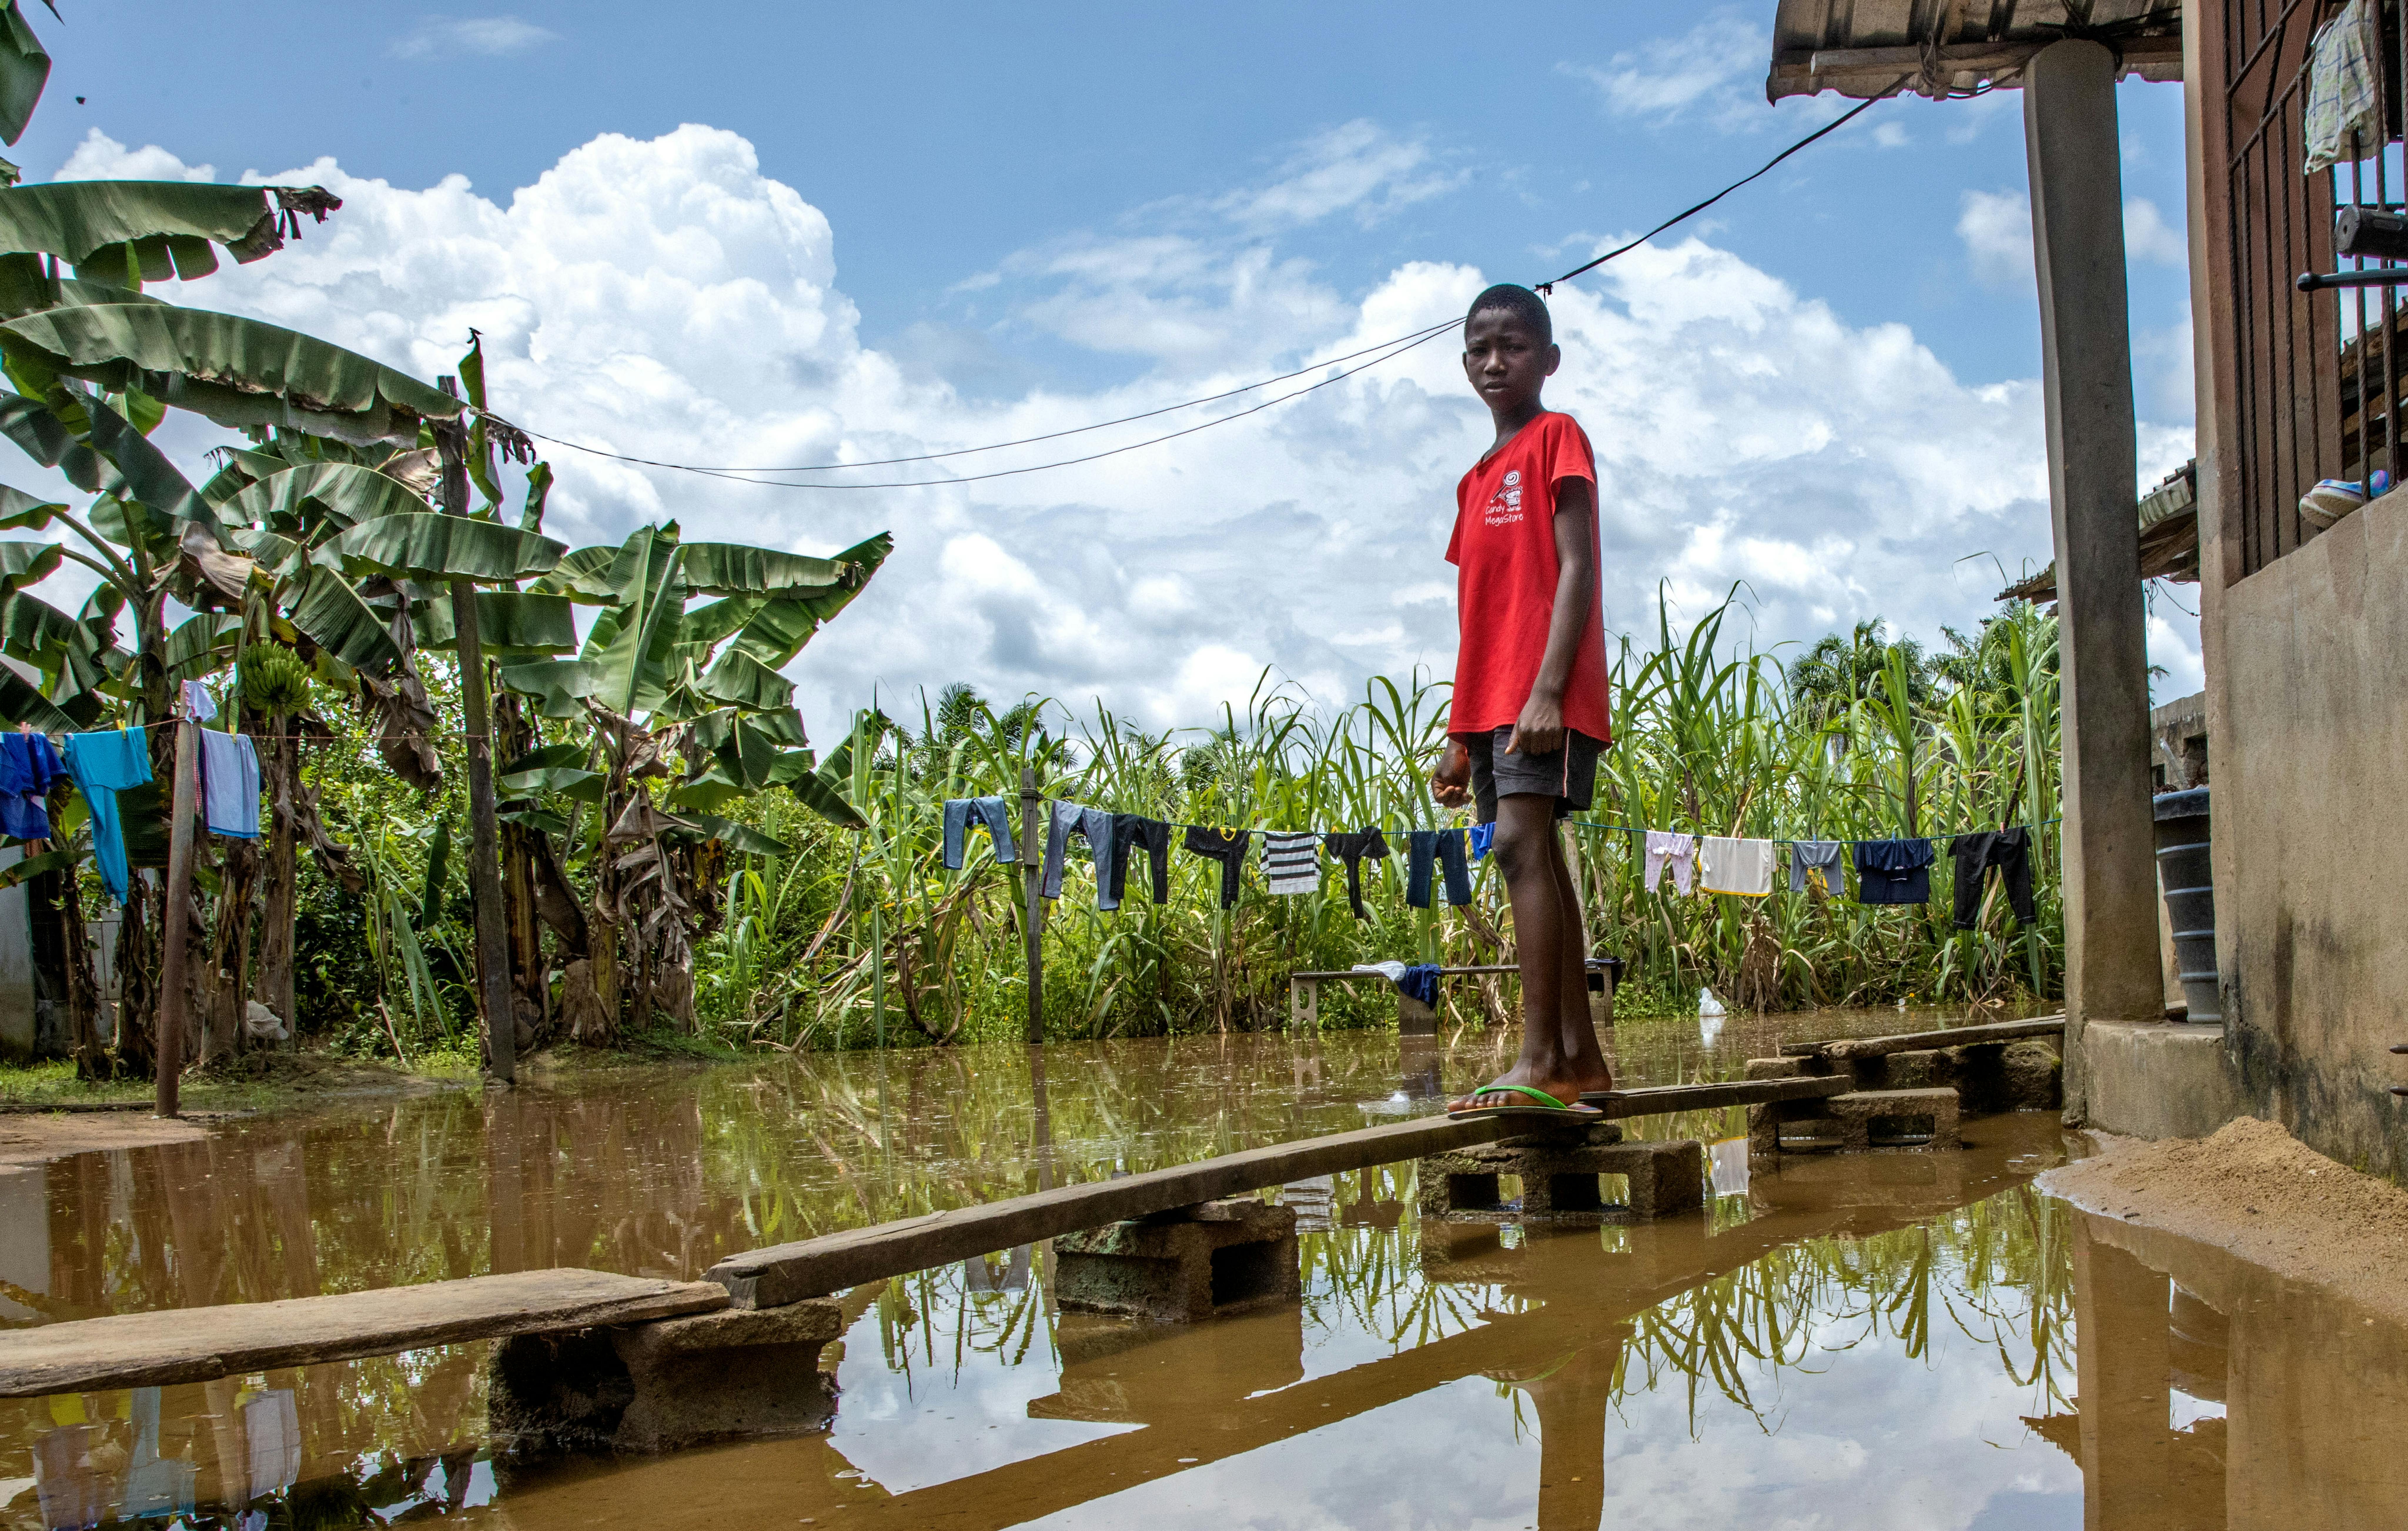 Peretimfa Germania 11 anni, è in piedi sulla passerella di legno improvvisata di fronte alla sua casa colpita dall'alluvione a Sagbama, nello stato di Bayelsa, in Nigeria.